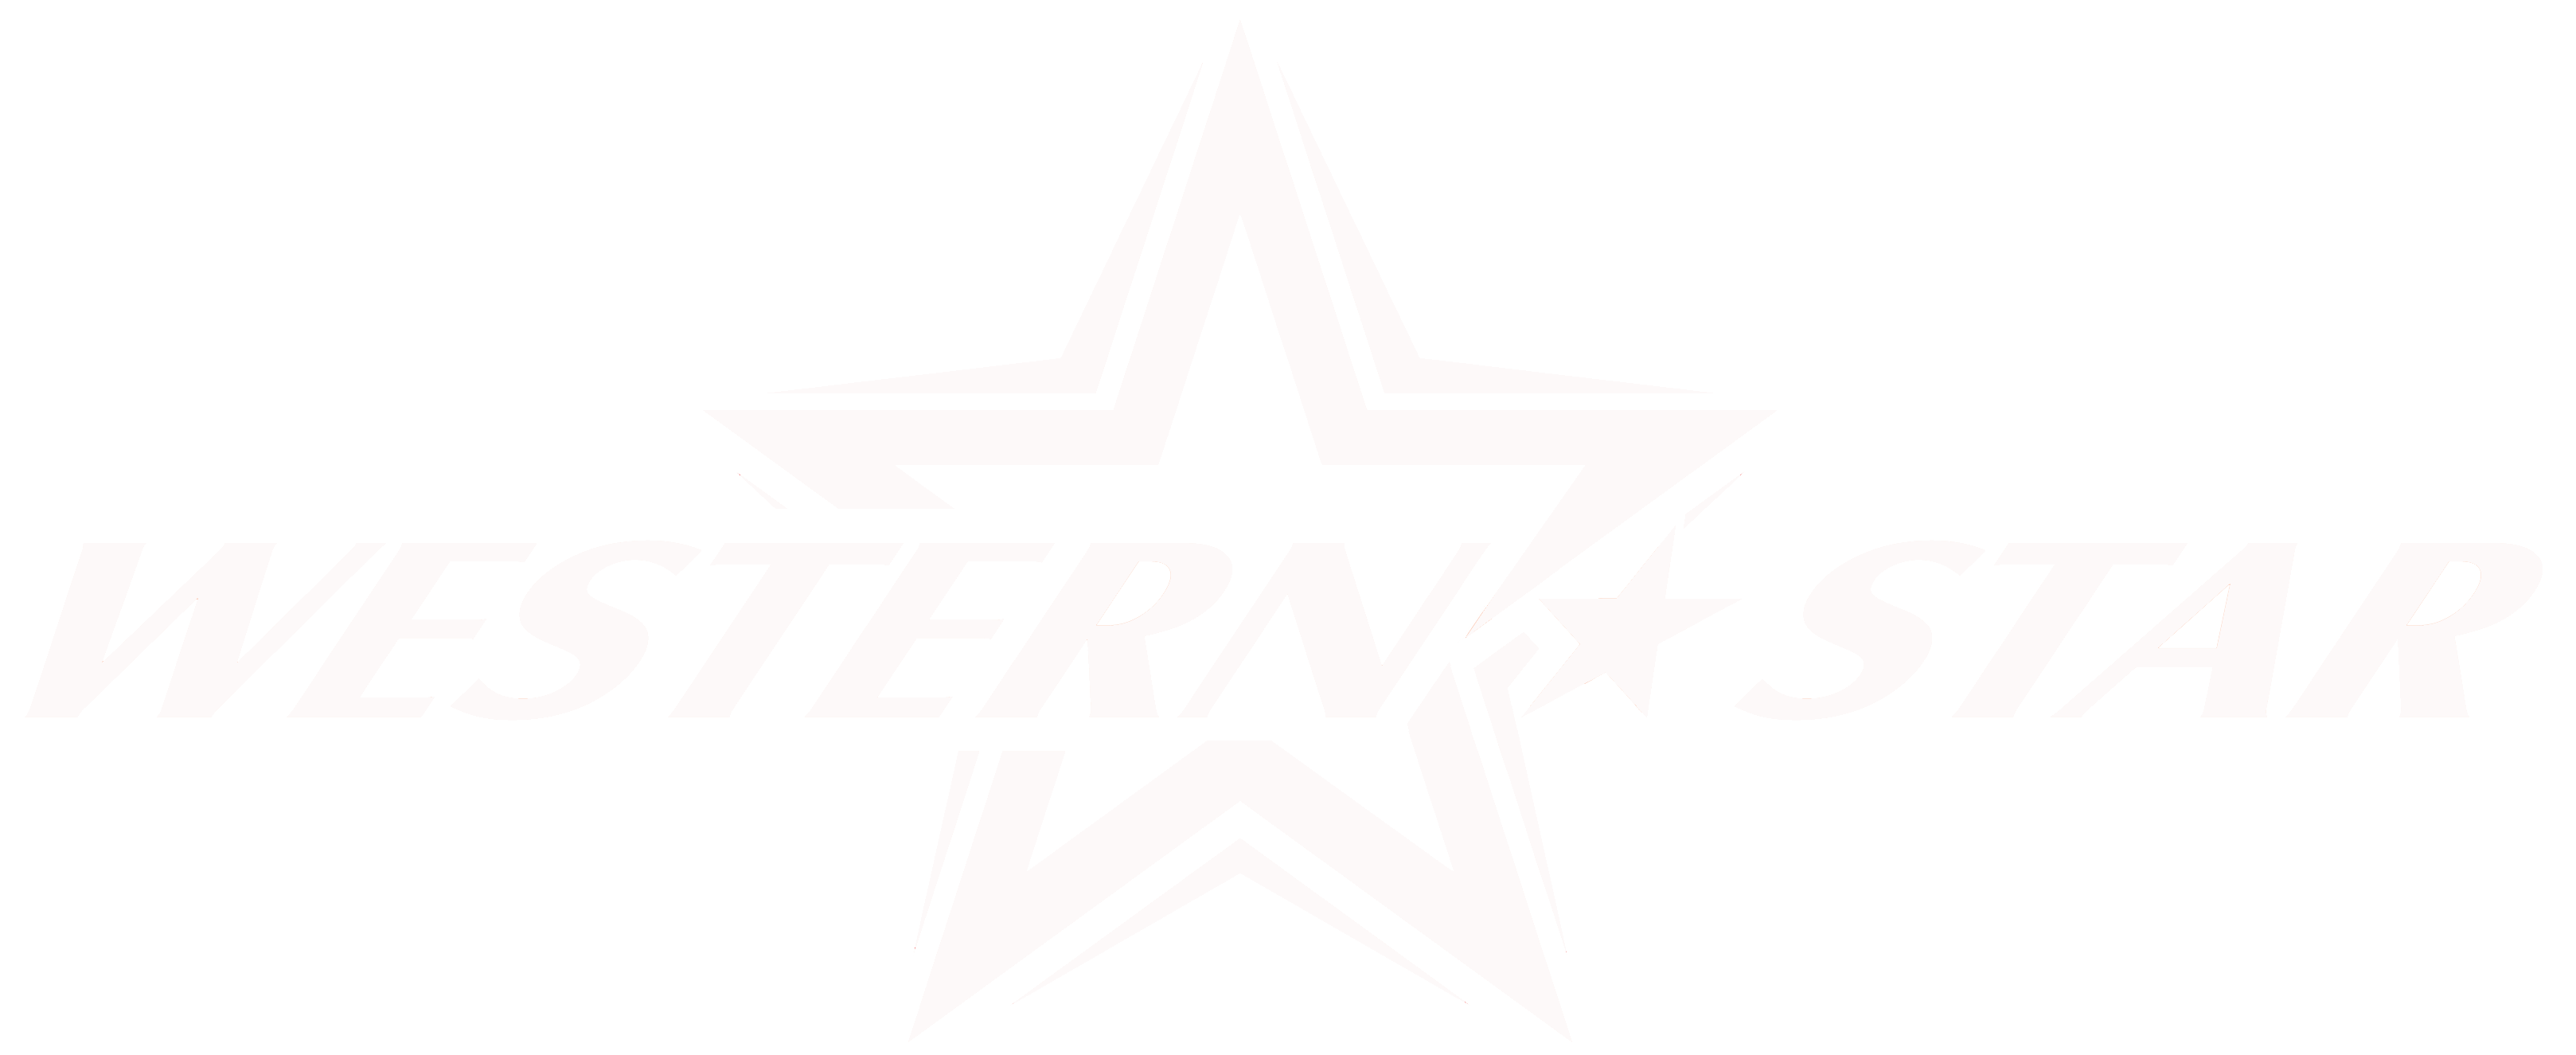 Western Star Logo - Western Star Souvenir LLC